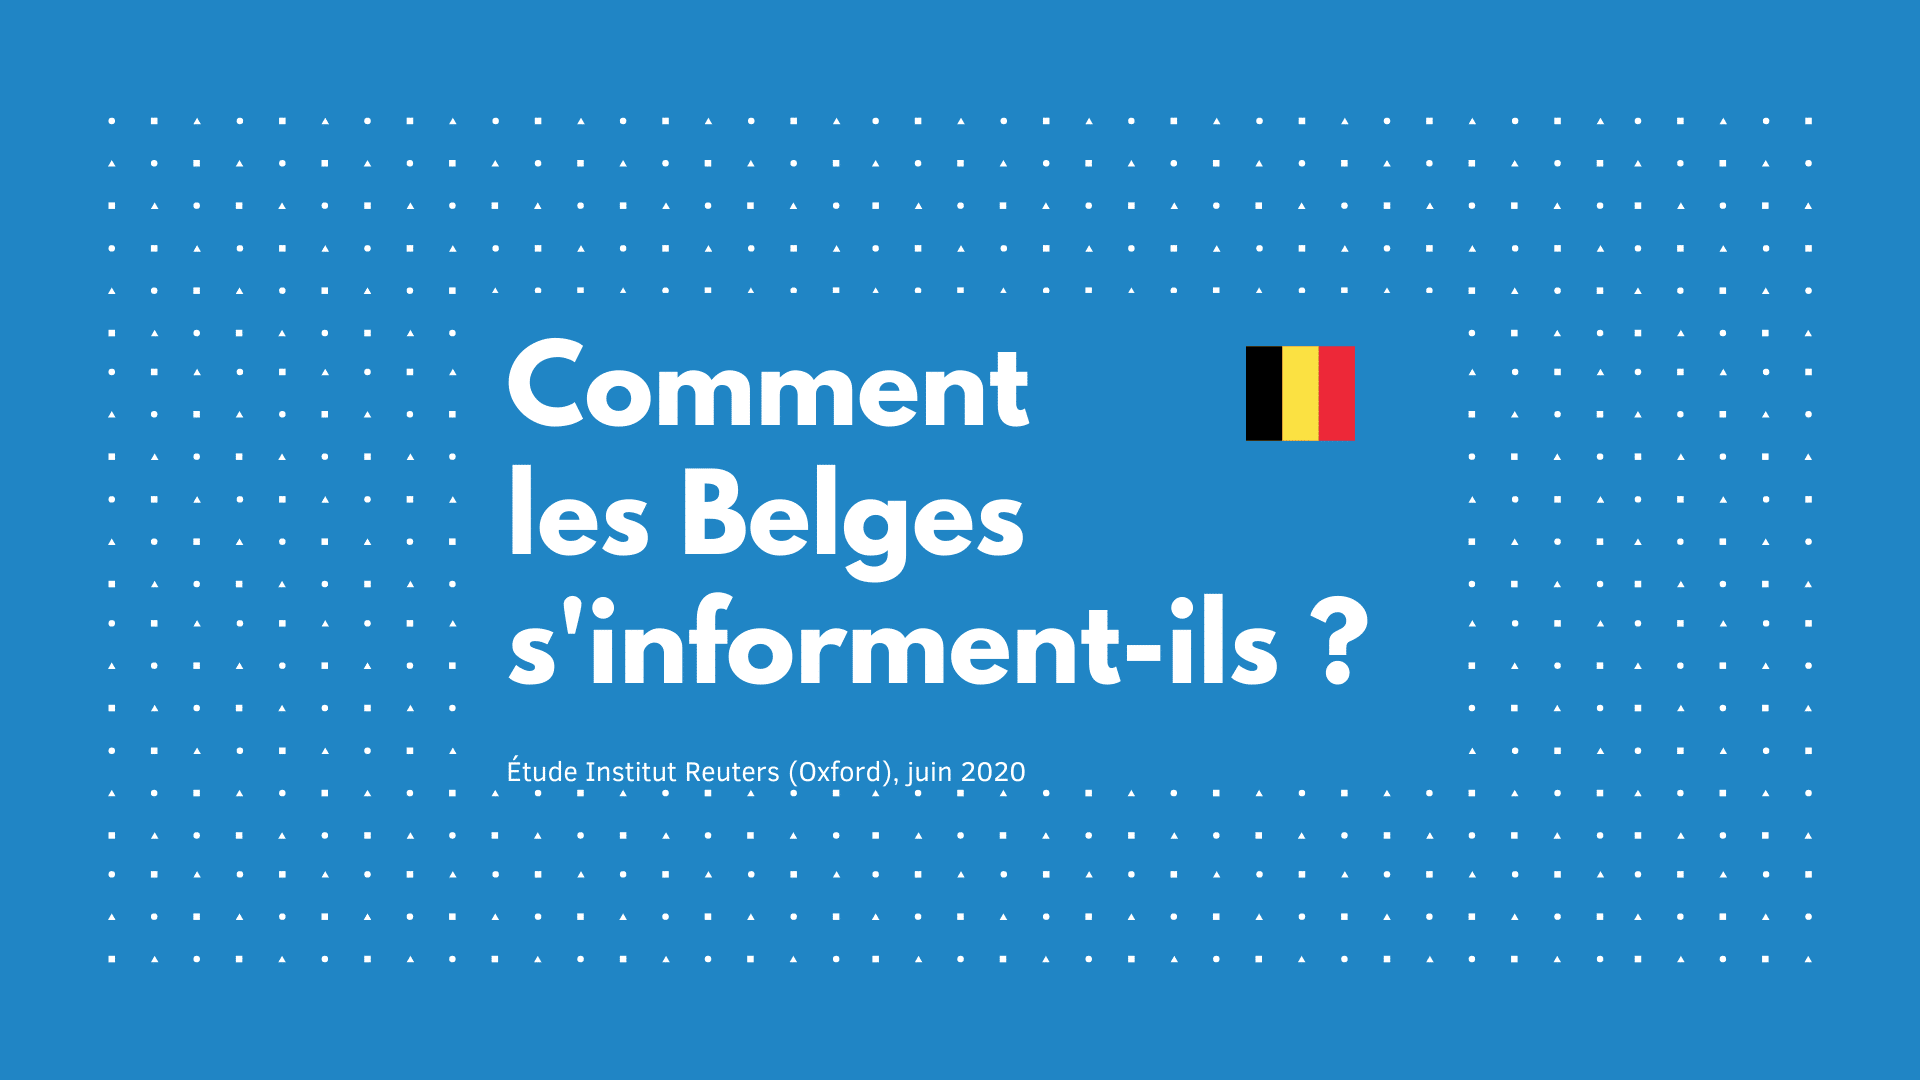 Les Belges s’informent davantage via les réseaux sociaux que via la presse écrite (étude juin 2020)